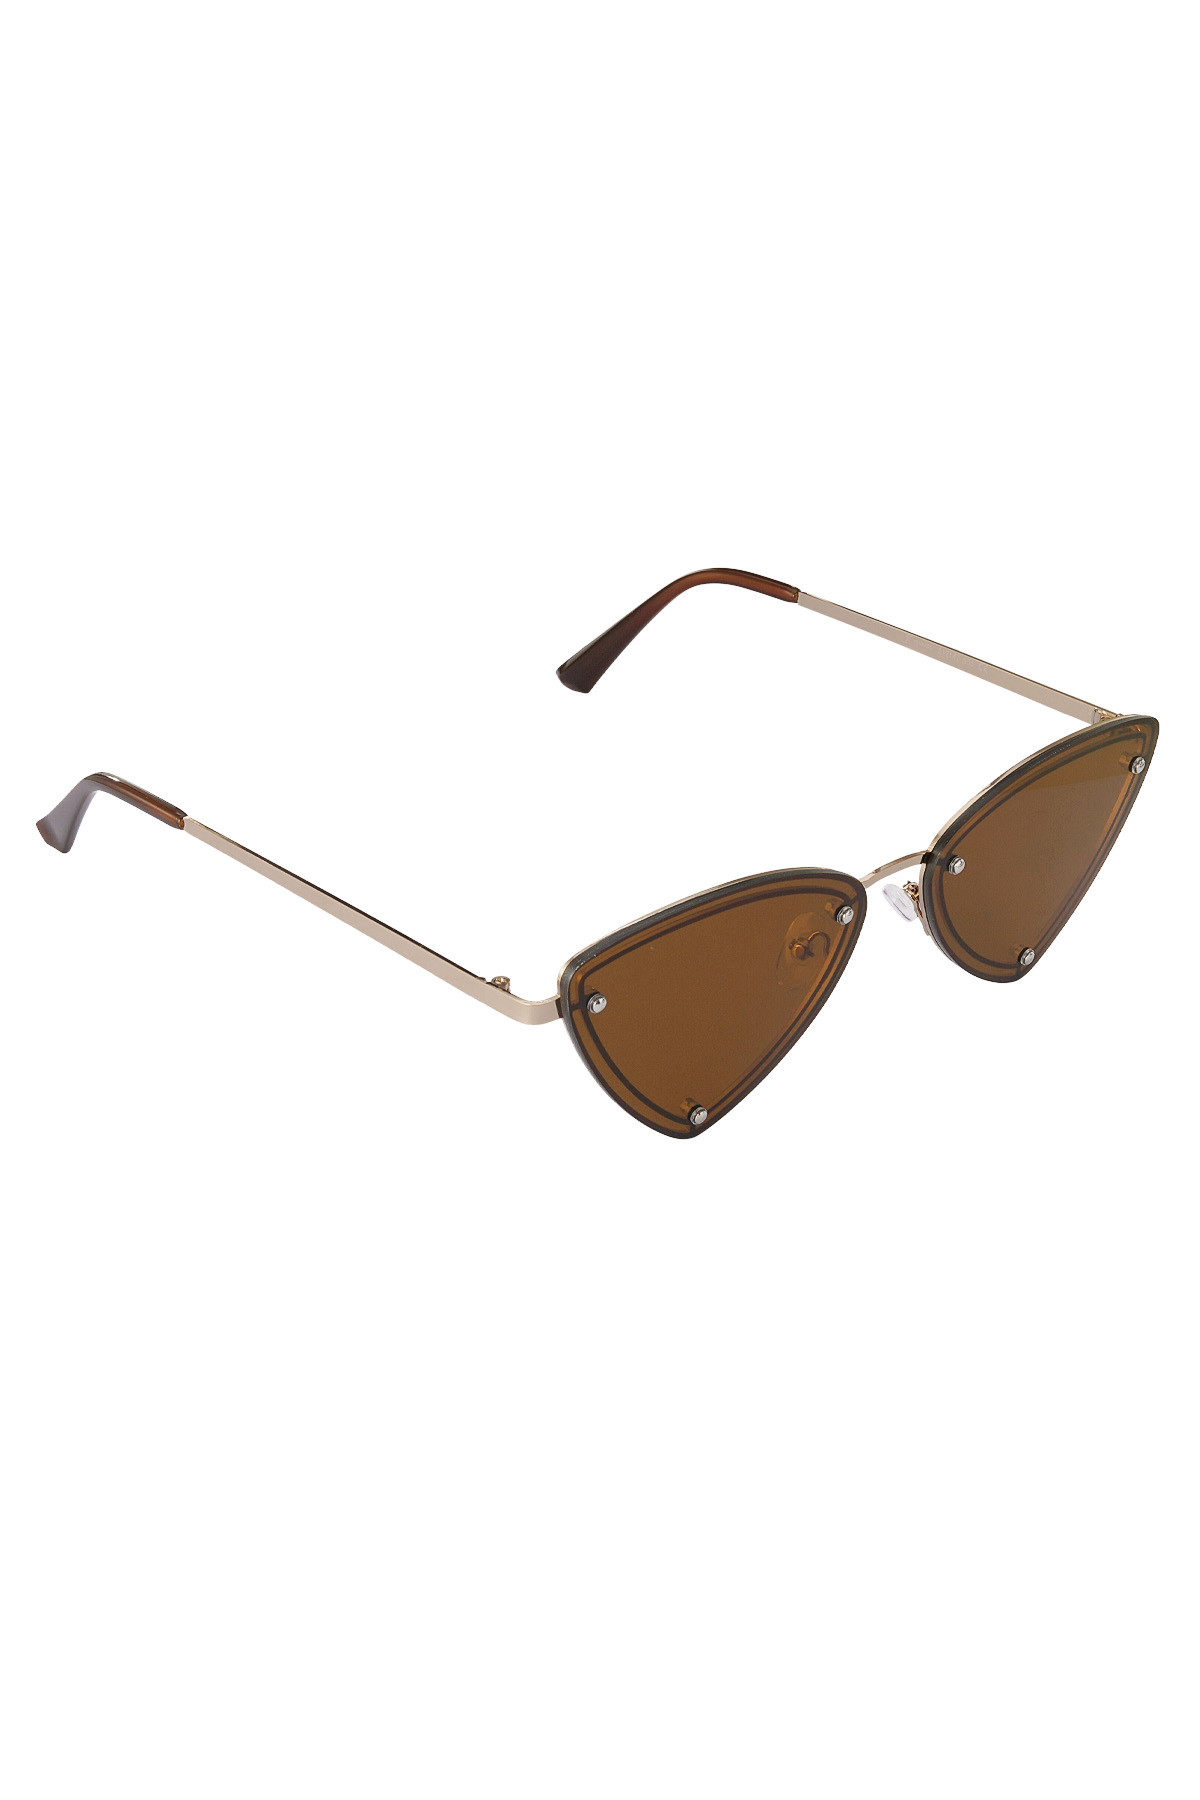 Retro party sunglasses - brown